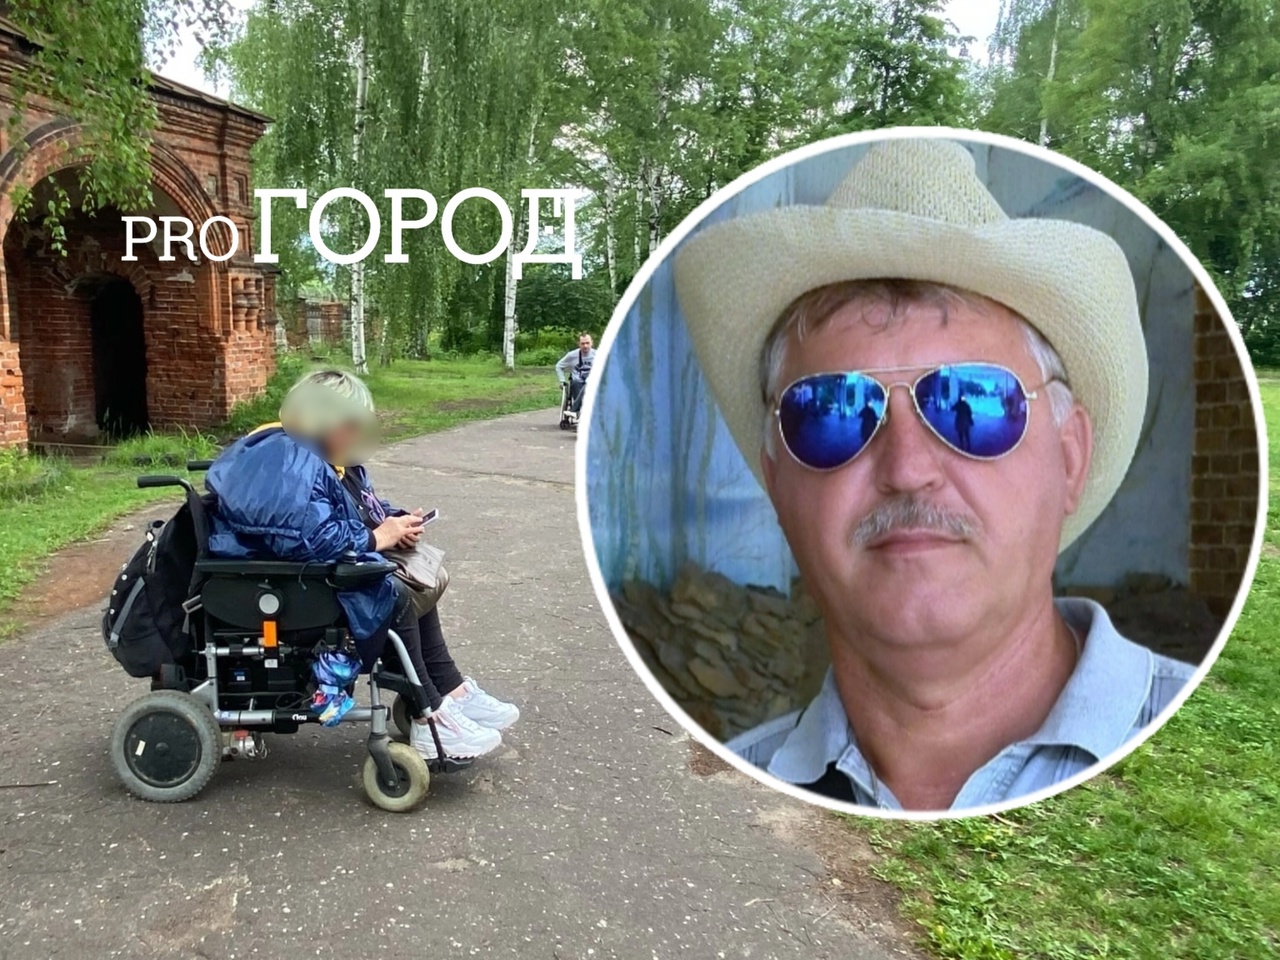 "Люди брошены!": ярославец проколол колесо инвалидной коляски из-за ремонта на Машиностроителей 